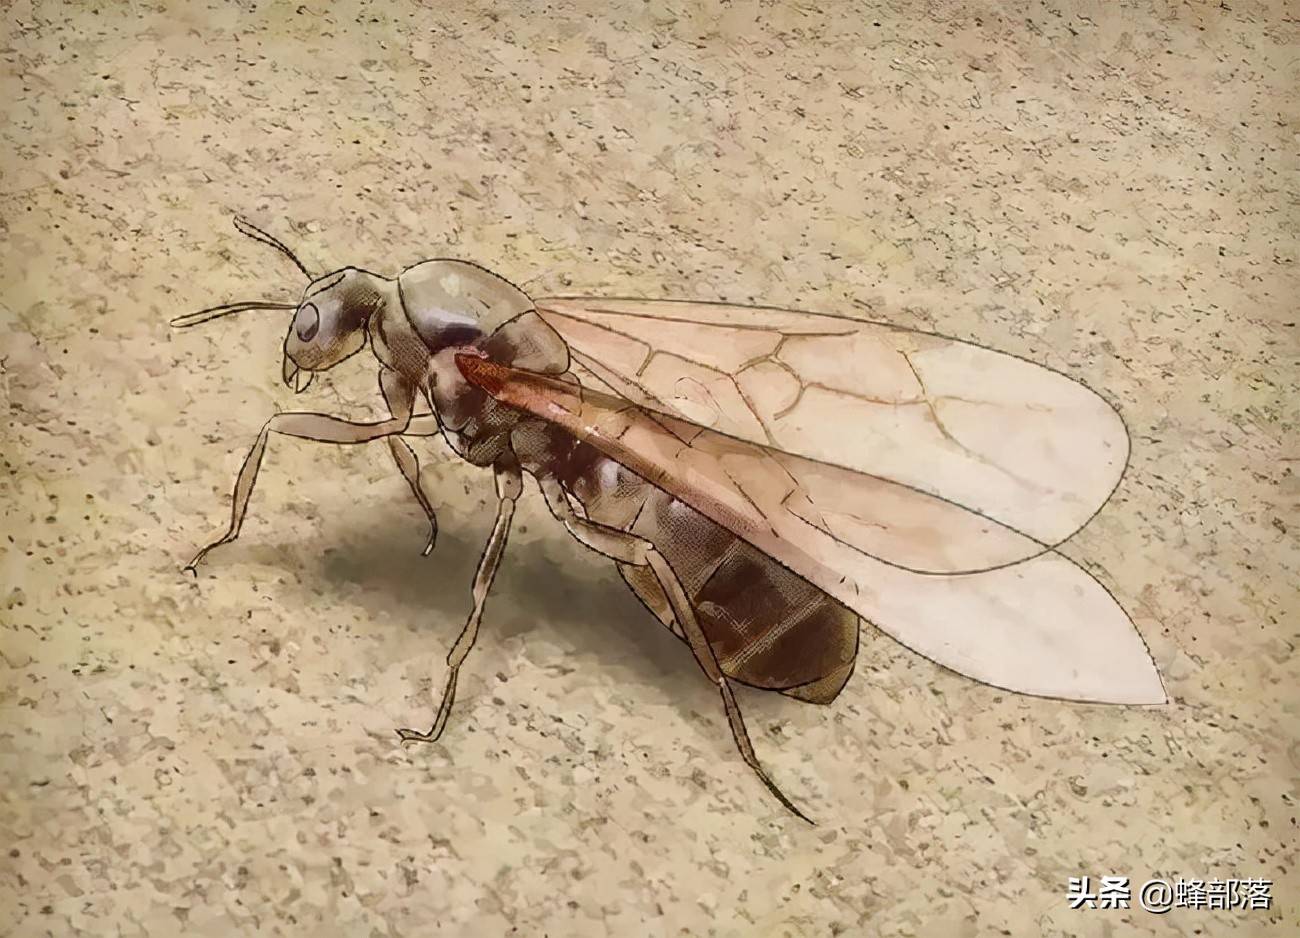 只是在进化的过程中出现了变化,如今我们可以看到的有翅膀的蚂蚁,实际